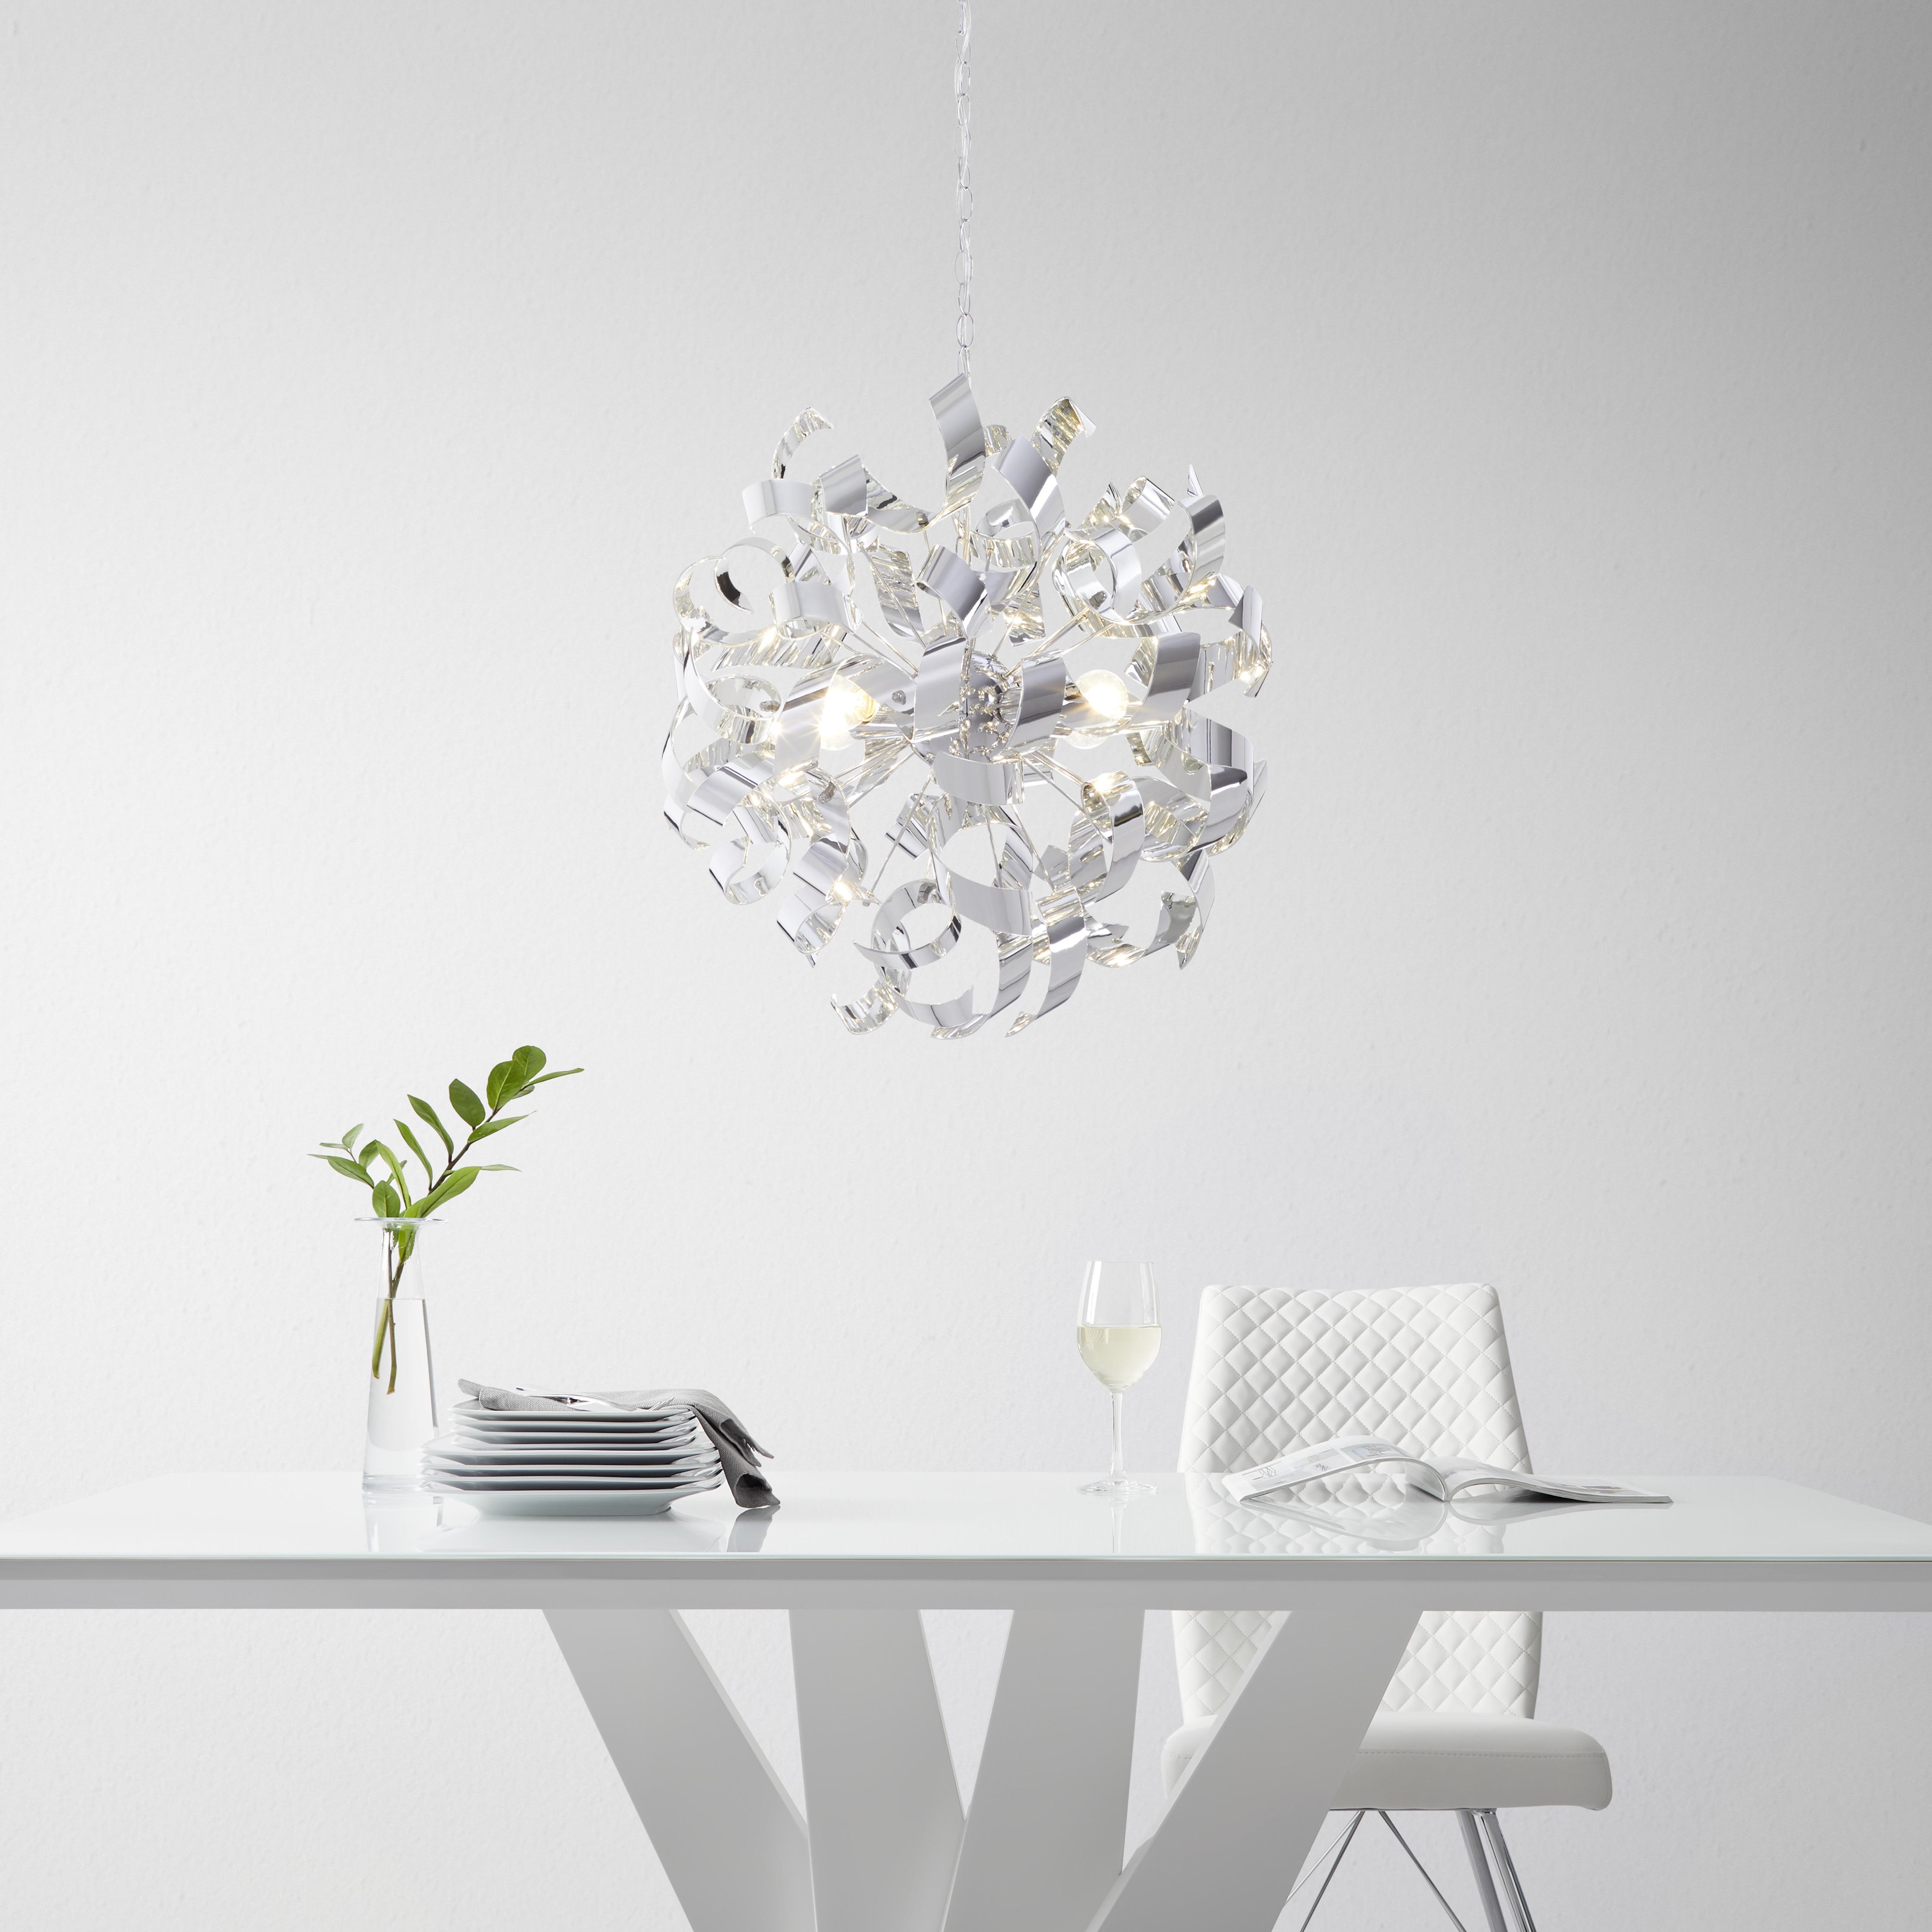 Lampa wisząca NALA ok. 50x120 cm - Modern, tworzywo sztuczne/metal (50cm) - Premium Living